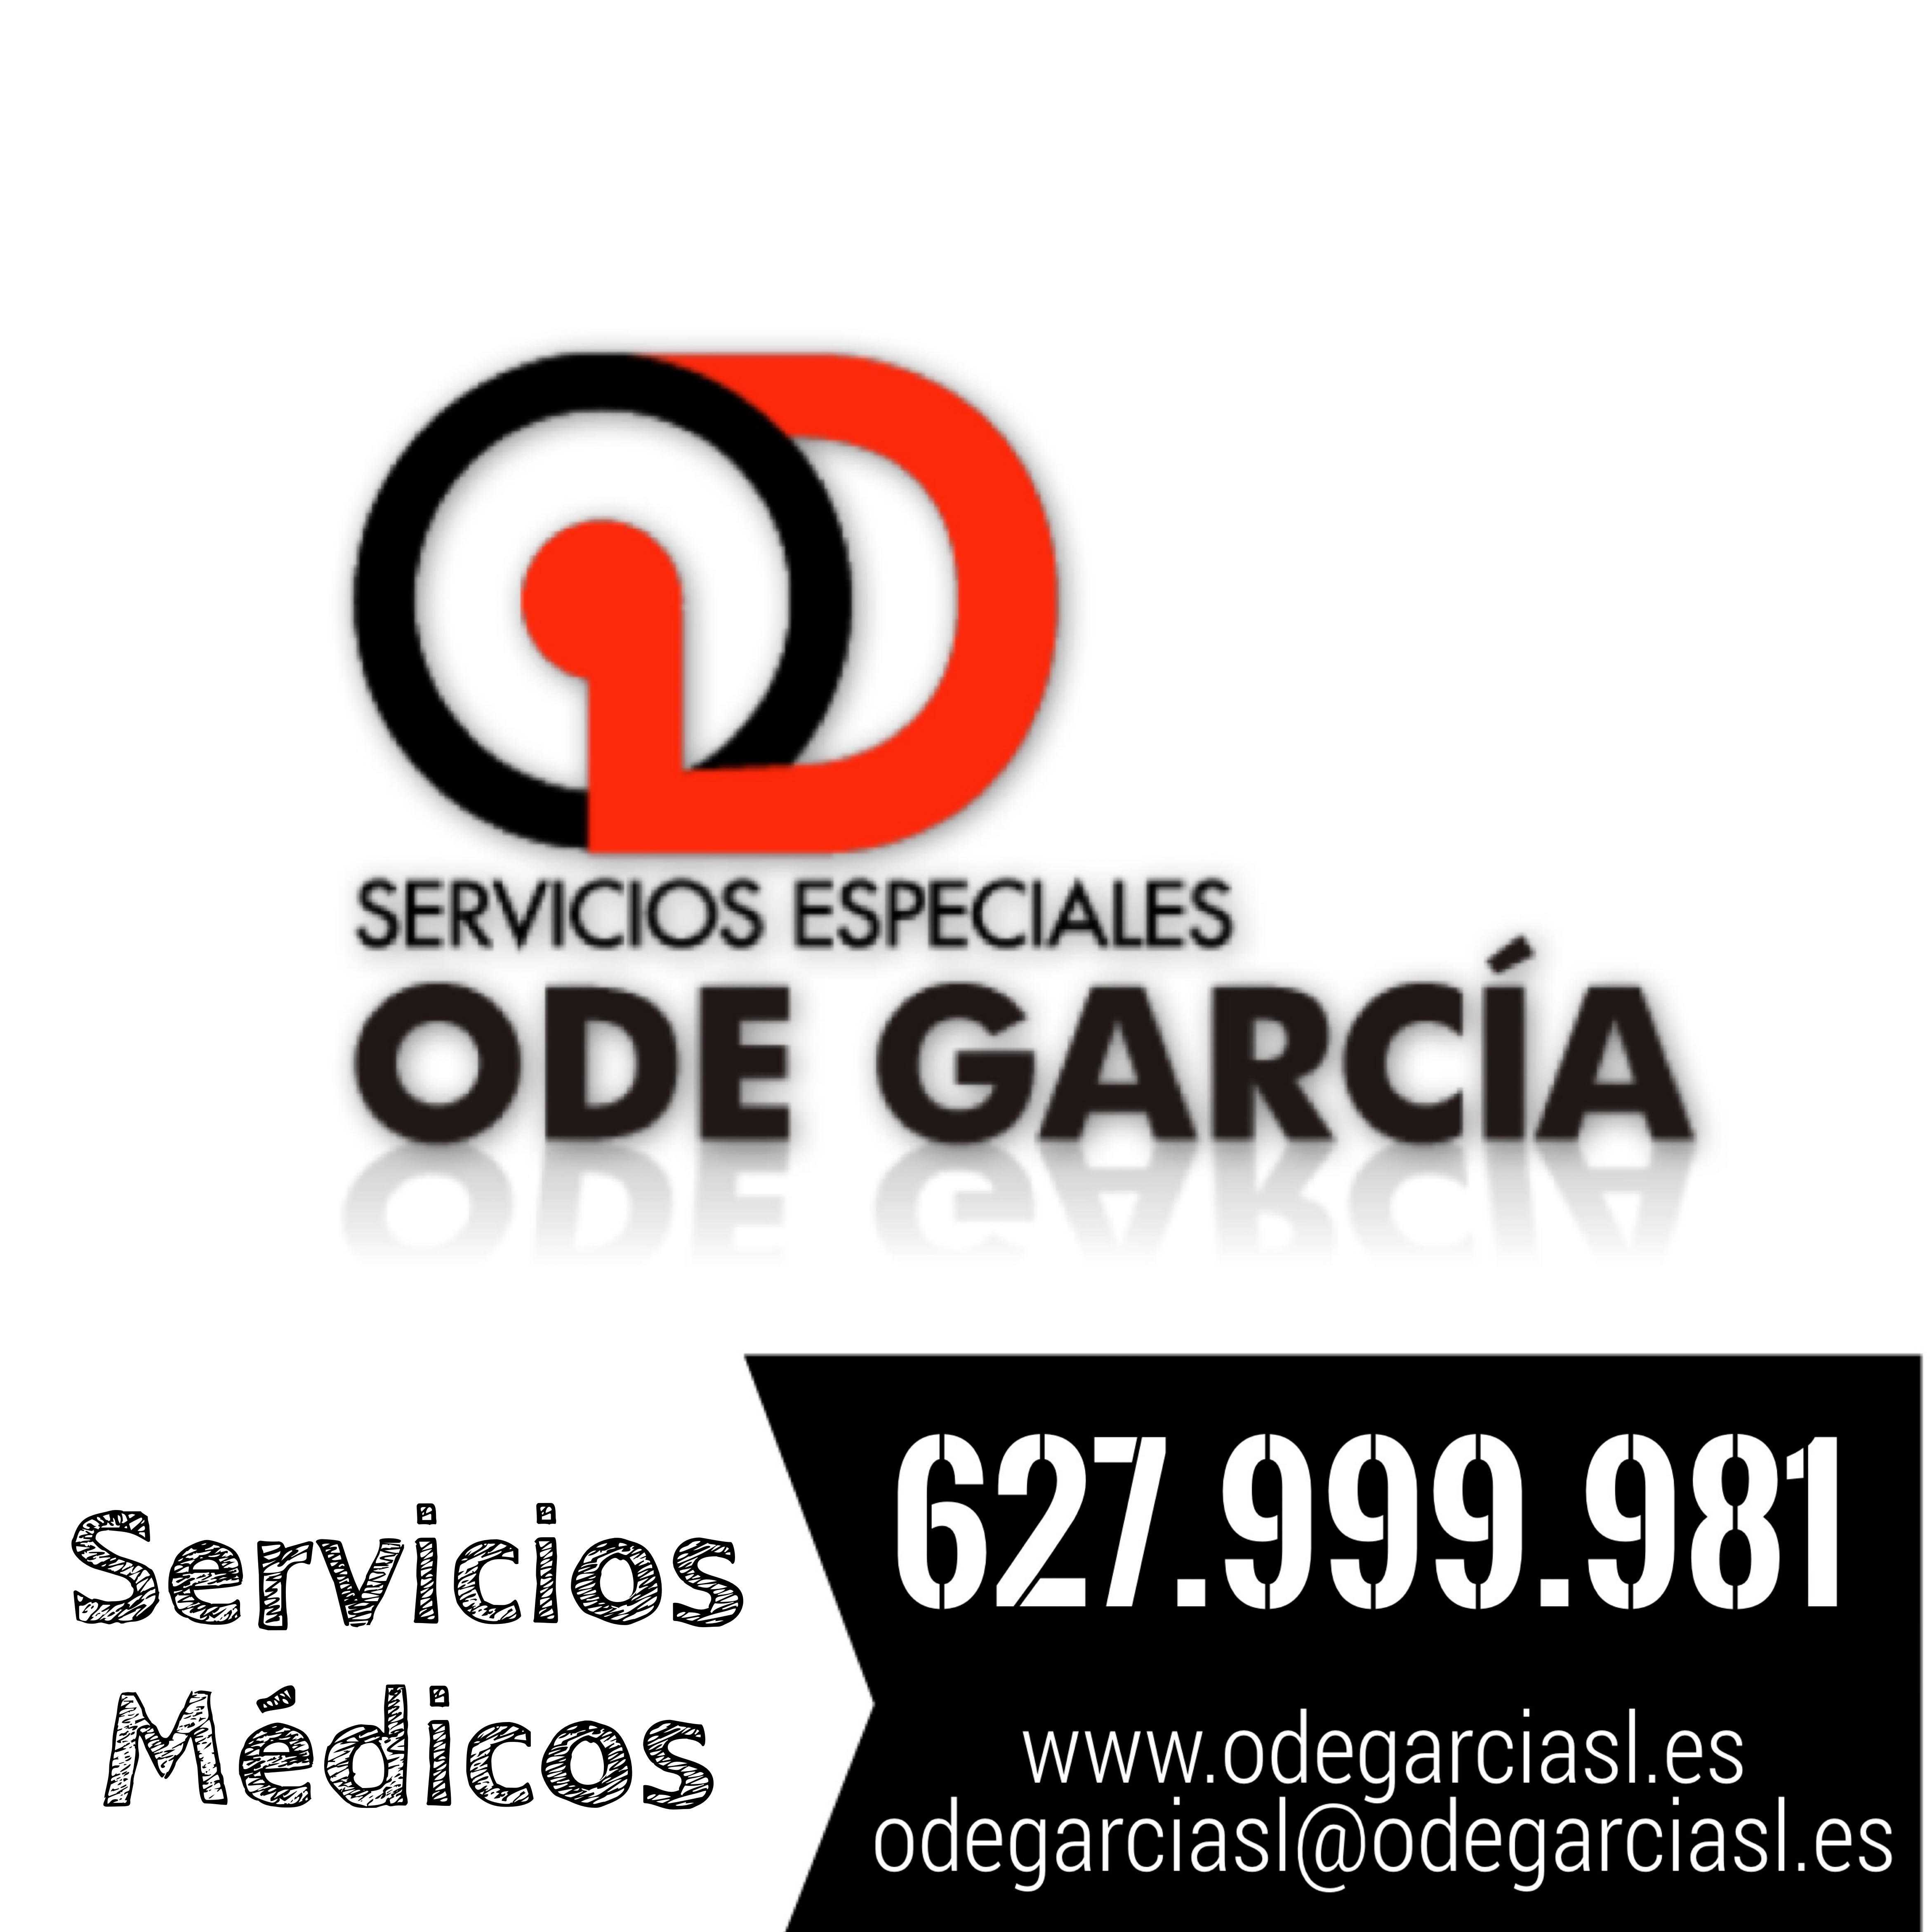 Logotipo Ode Garcia